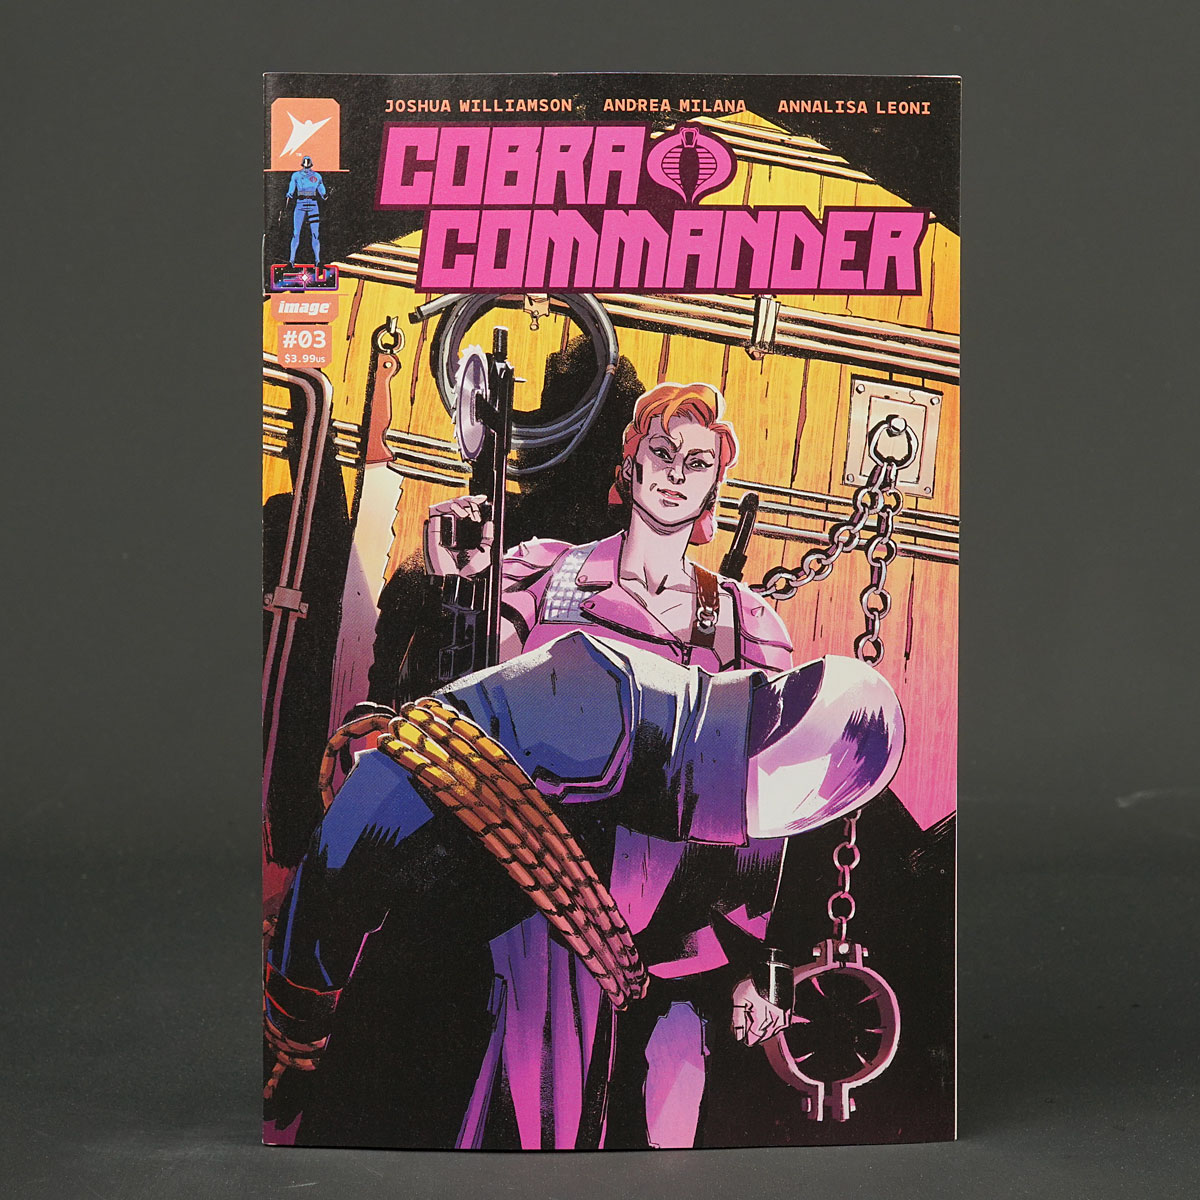 COBRA COMMANDER #3 Cvr A Image Comics 2024 3A 0124IM238 (A/CA) Milana + Leoni (W) Williamson